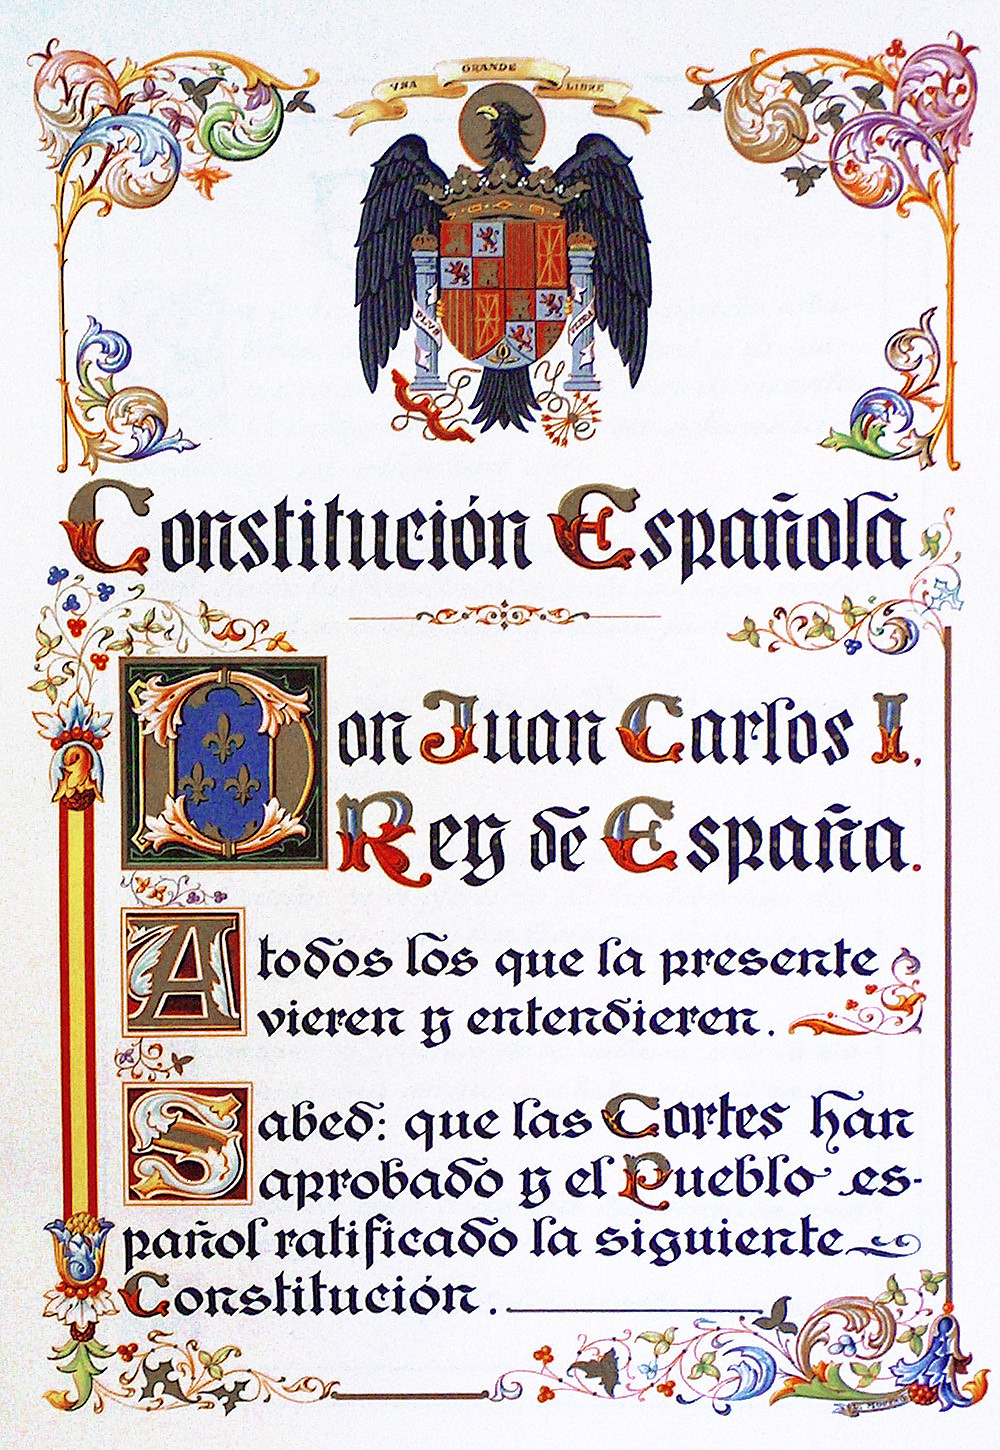 Facsímil de la Constitución encargado al calígrafo Luis Moreno por las Cortes en 1979. Ablasj. Wikipedia